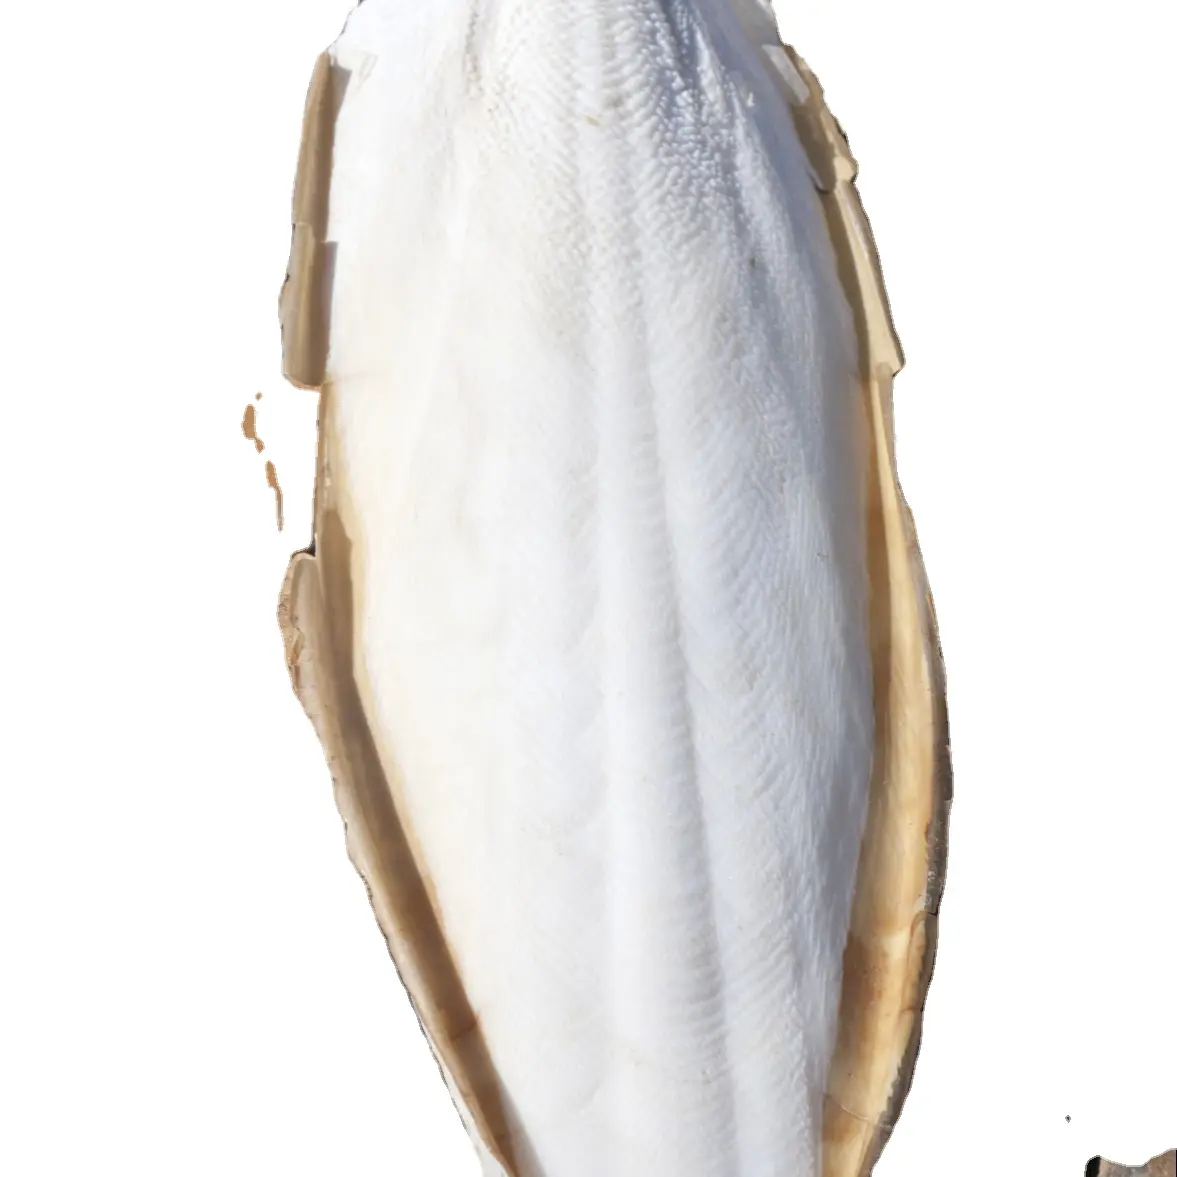 Cortlefish ossos secos/medicamentos/natural do vietnã/ms valero + 84.94 7569180